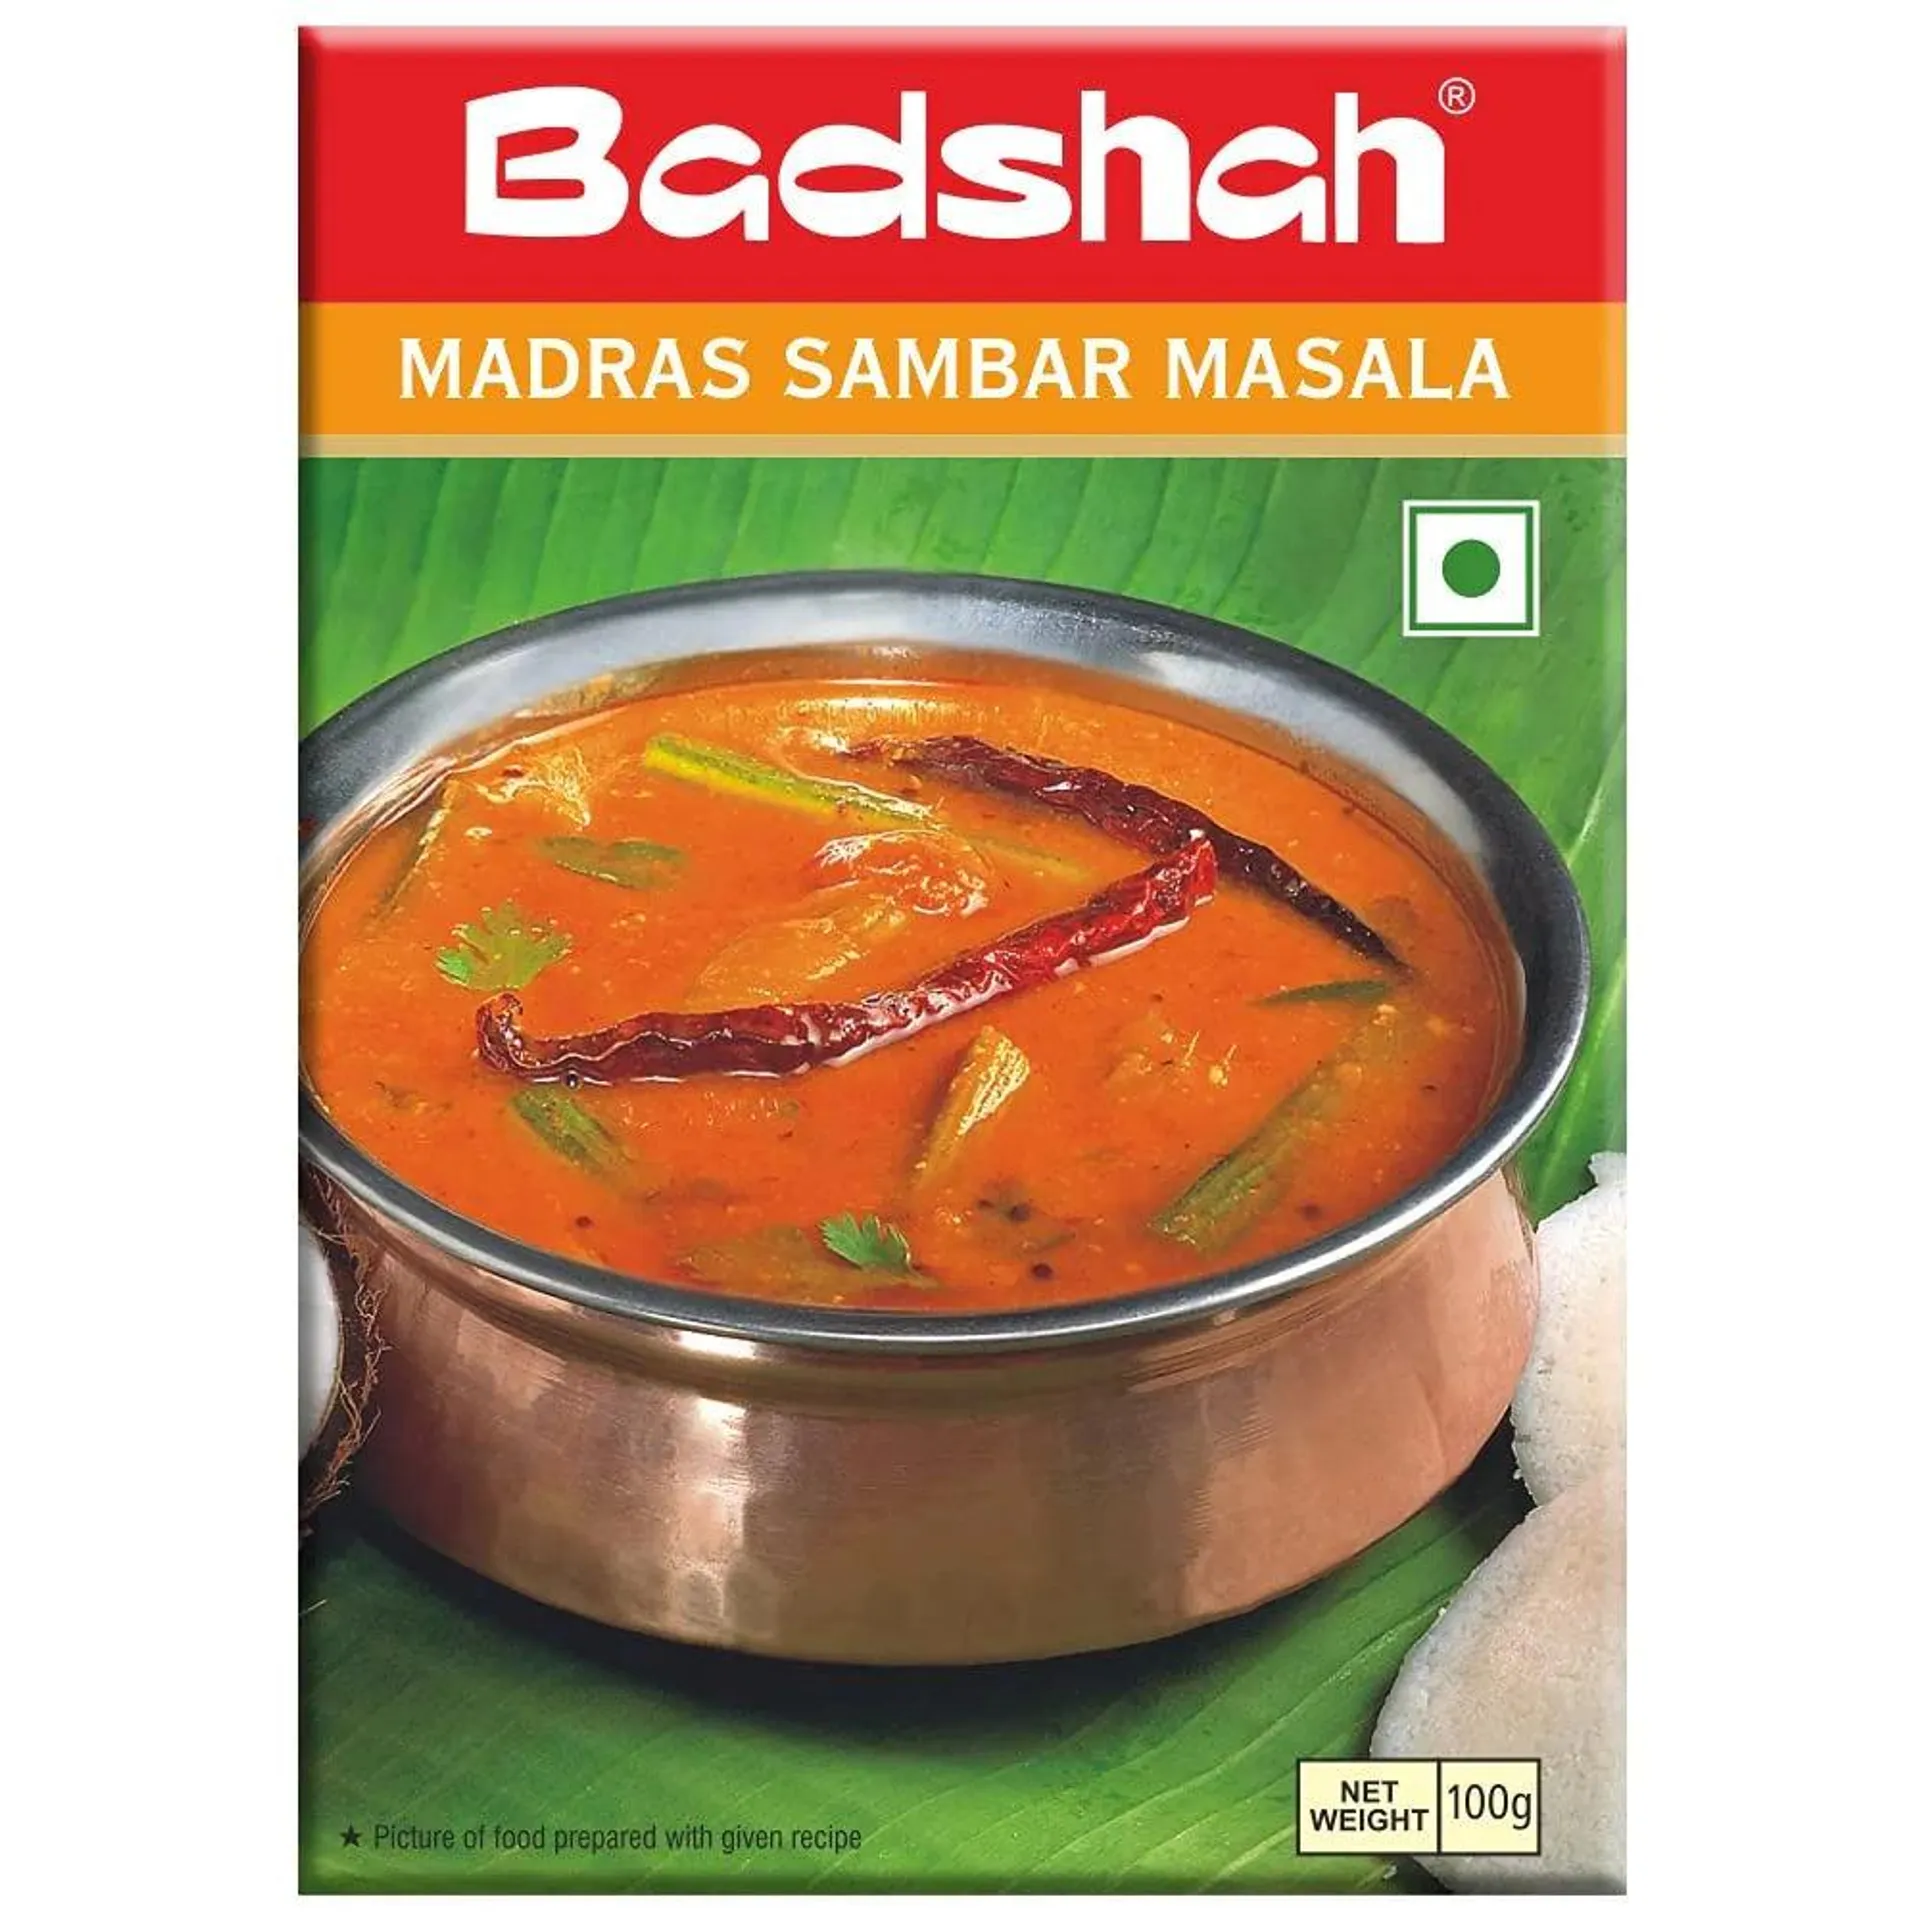 Badshah Mas Madras Sambar 100g